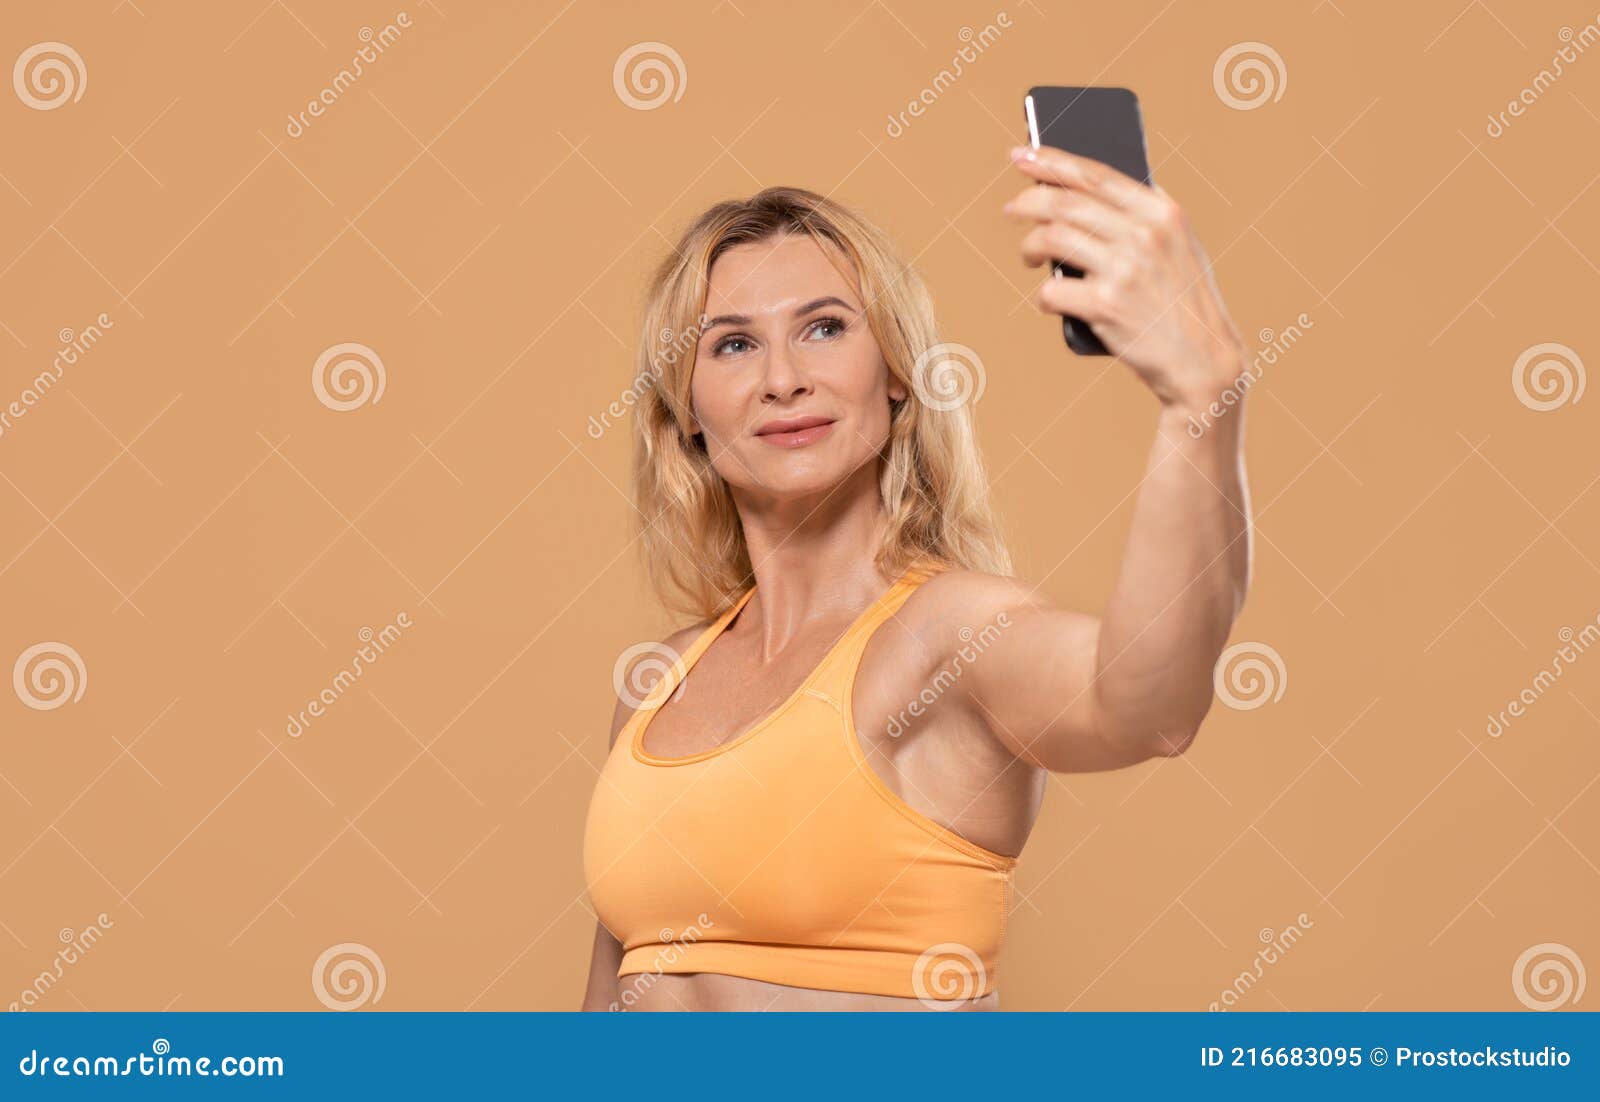 mature selfie hand bra